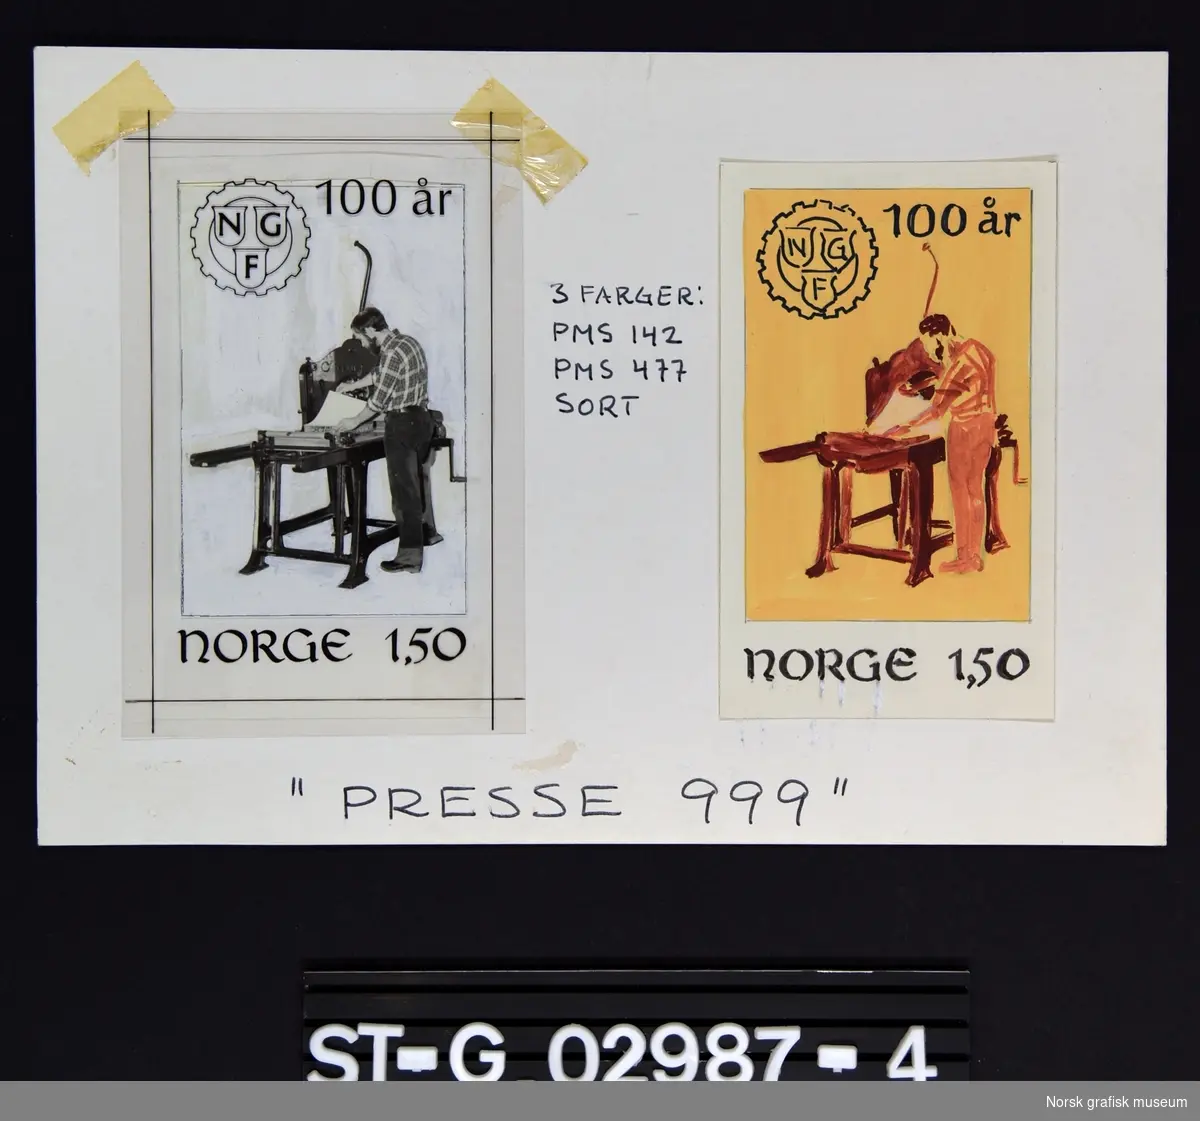 På en papplate er det montert to mindre bilder av en mann med trykkpresse i ulik stilisert versjon, og med logoen til NGF samt datering og frimerkepris (NORGE 1,30) skrevet på. Nederst står det_ "PRESSE 999"